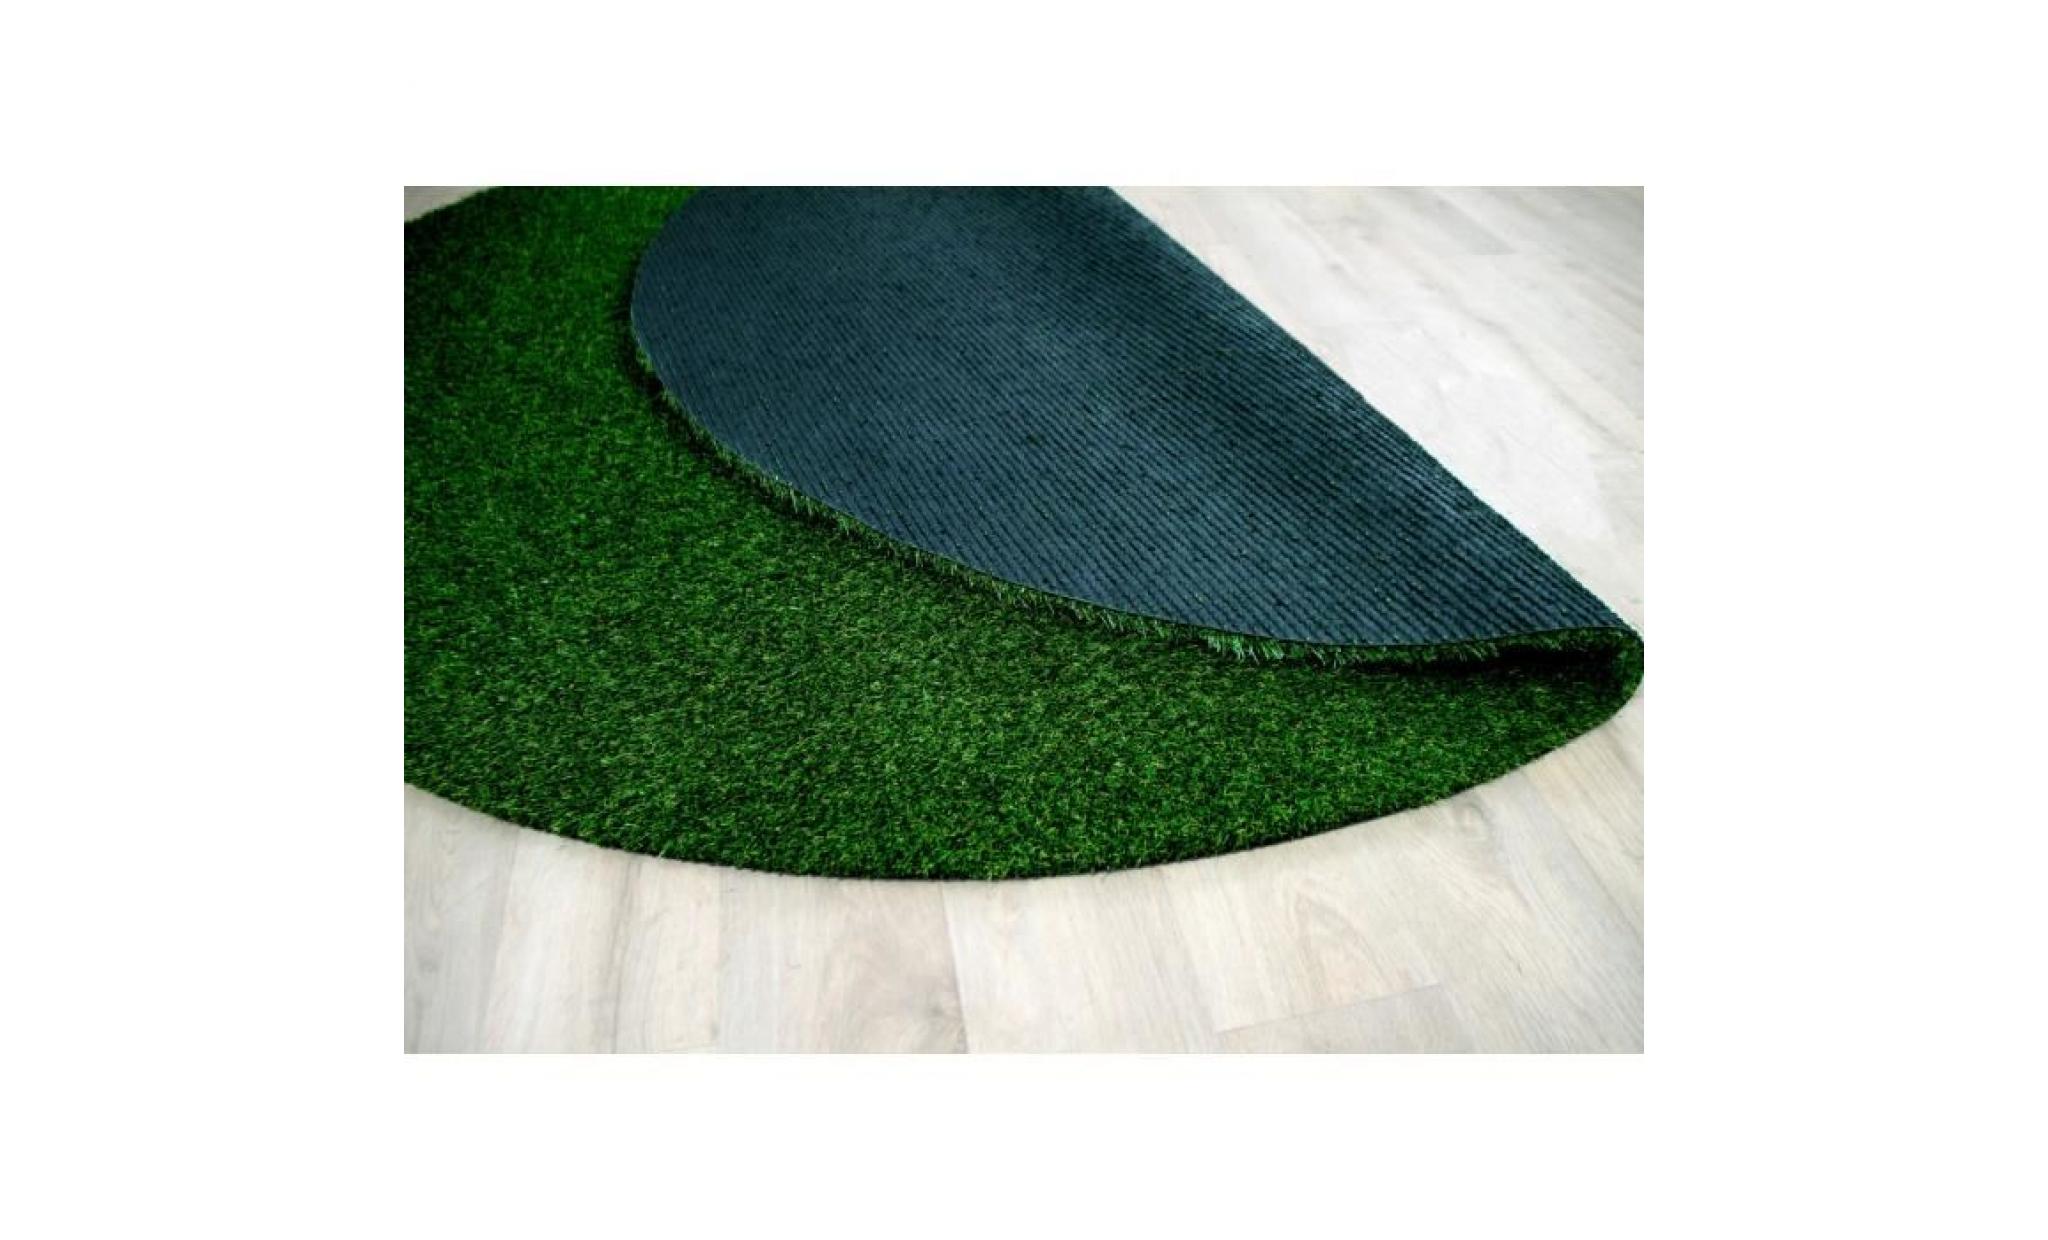 chelsea   tapis type luxe gazon artificiel rond – pour jardin, terrasse, balcon   vert   [133 cm rond] pas cher